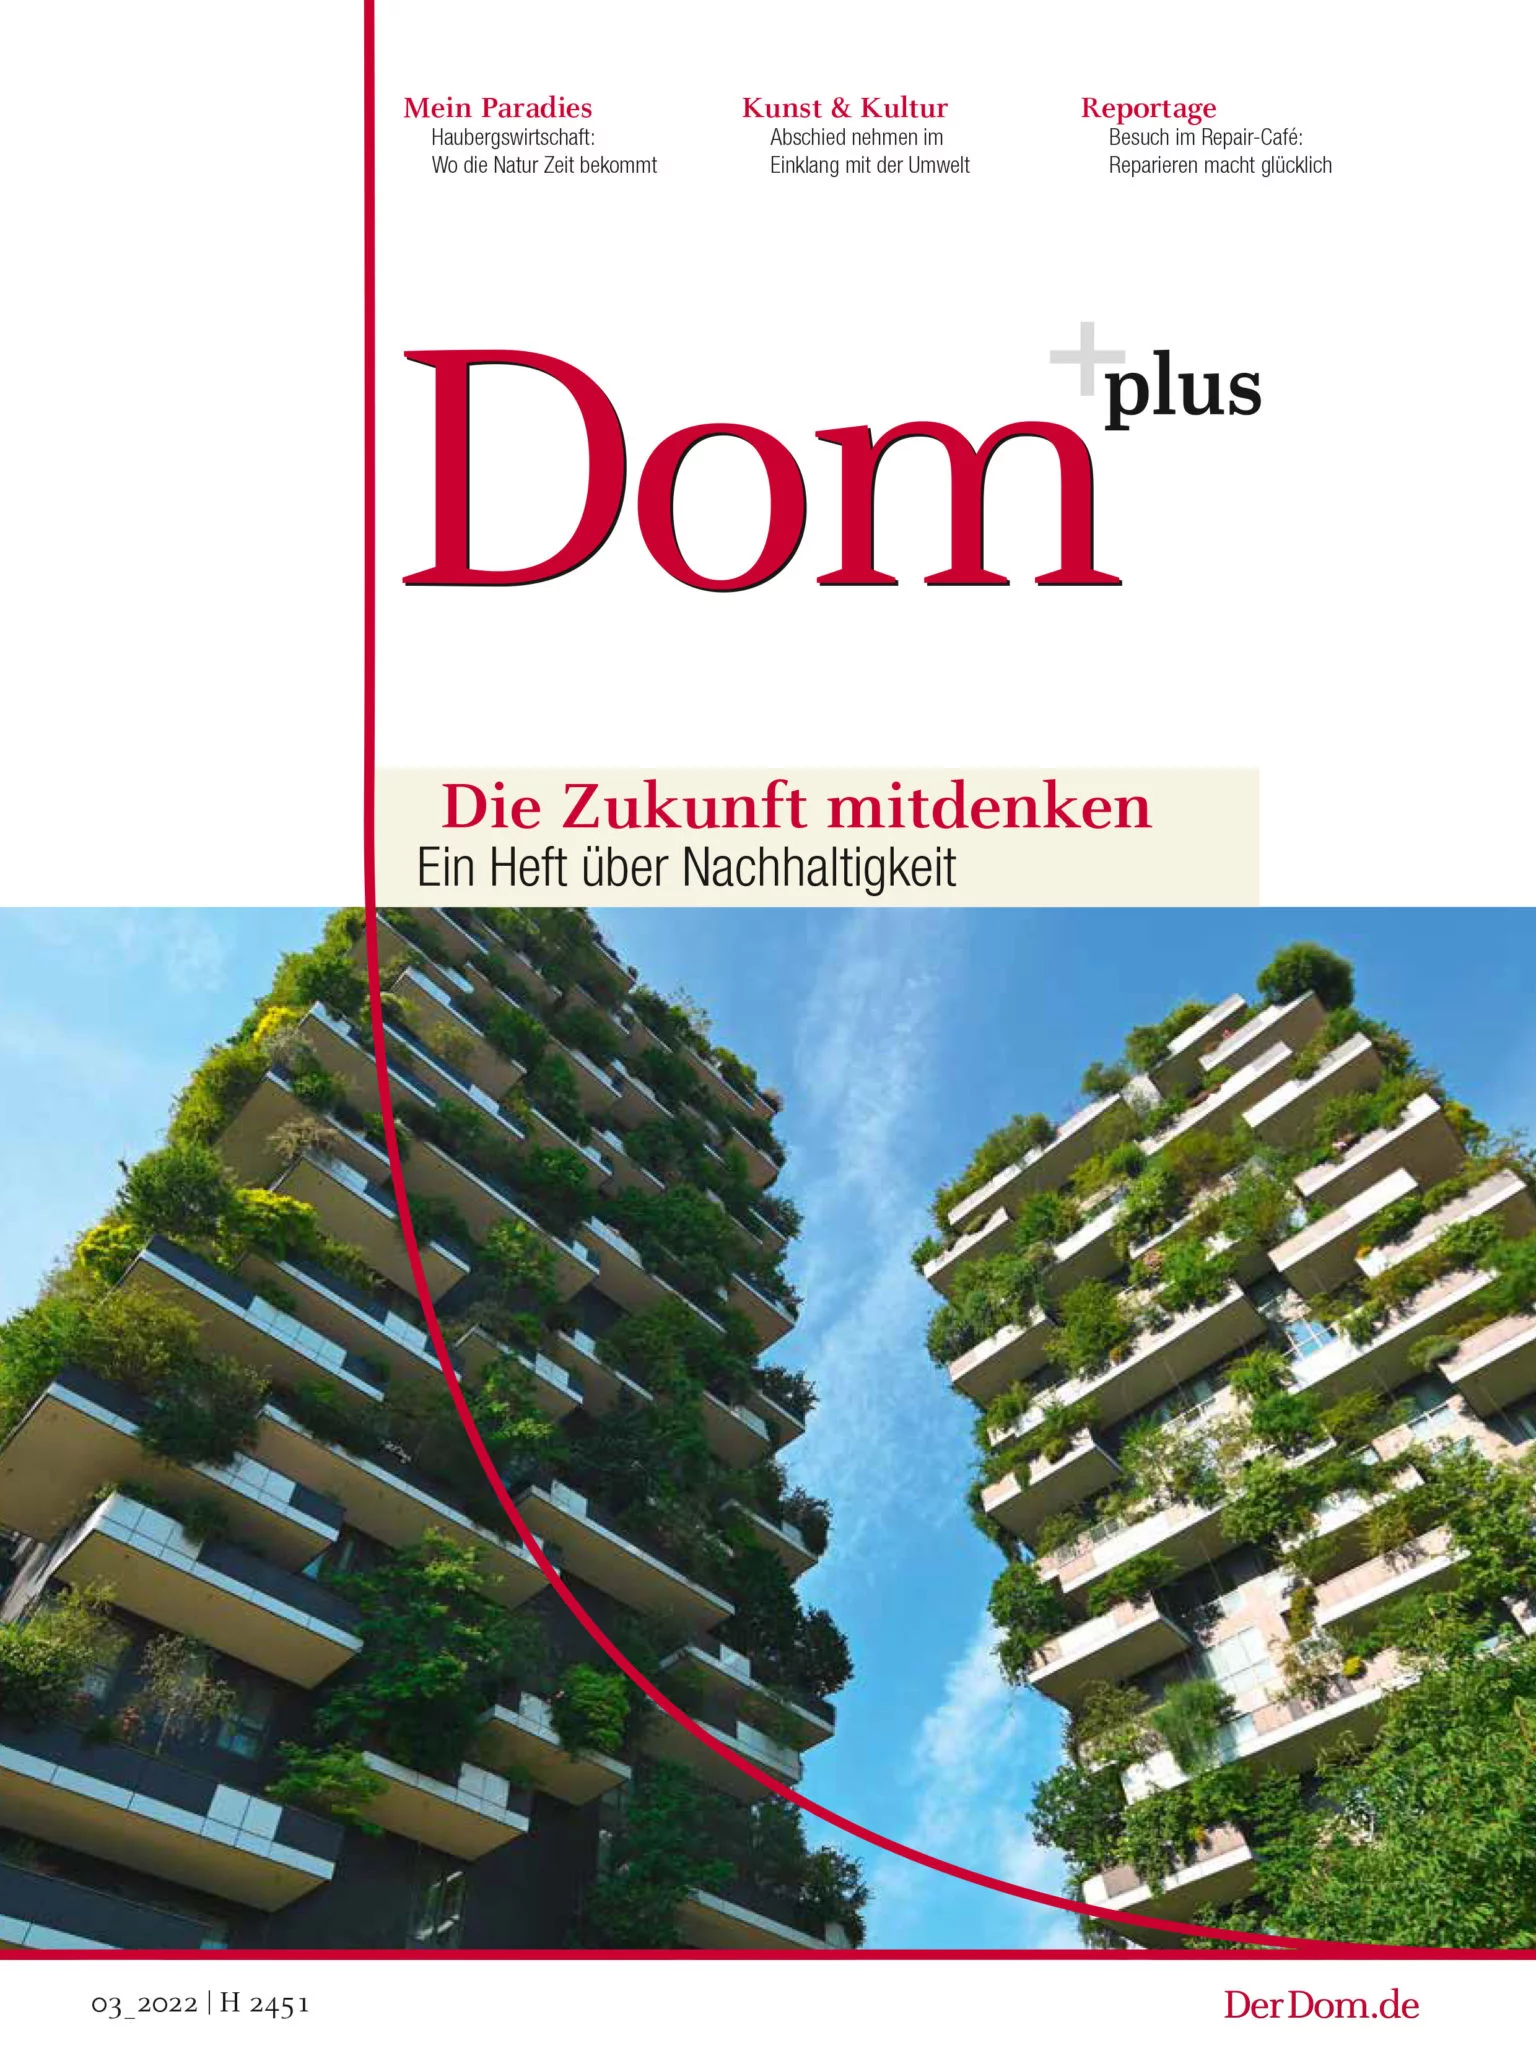 Ein Heft über Nachhaltigkeit